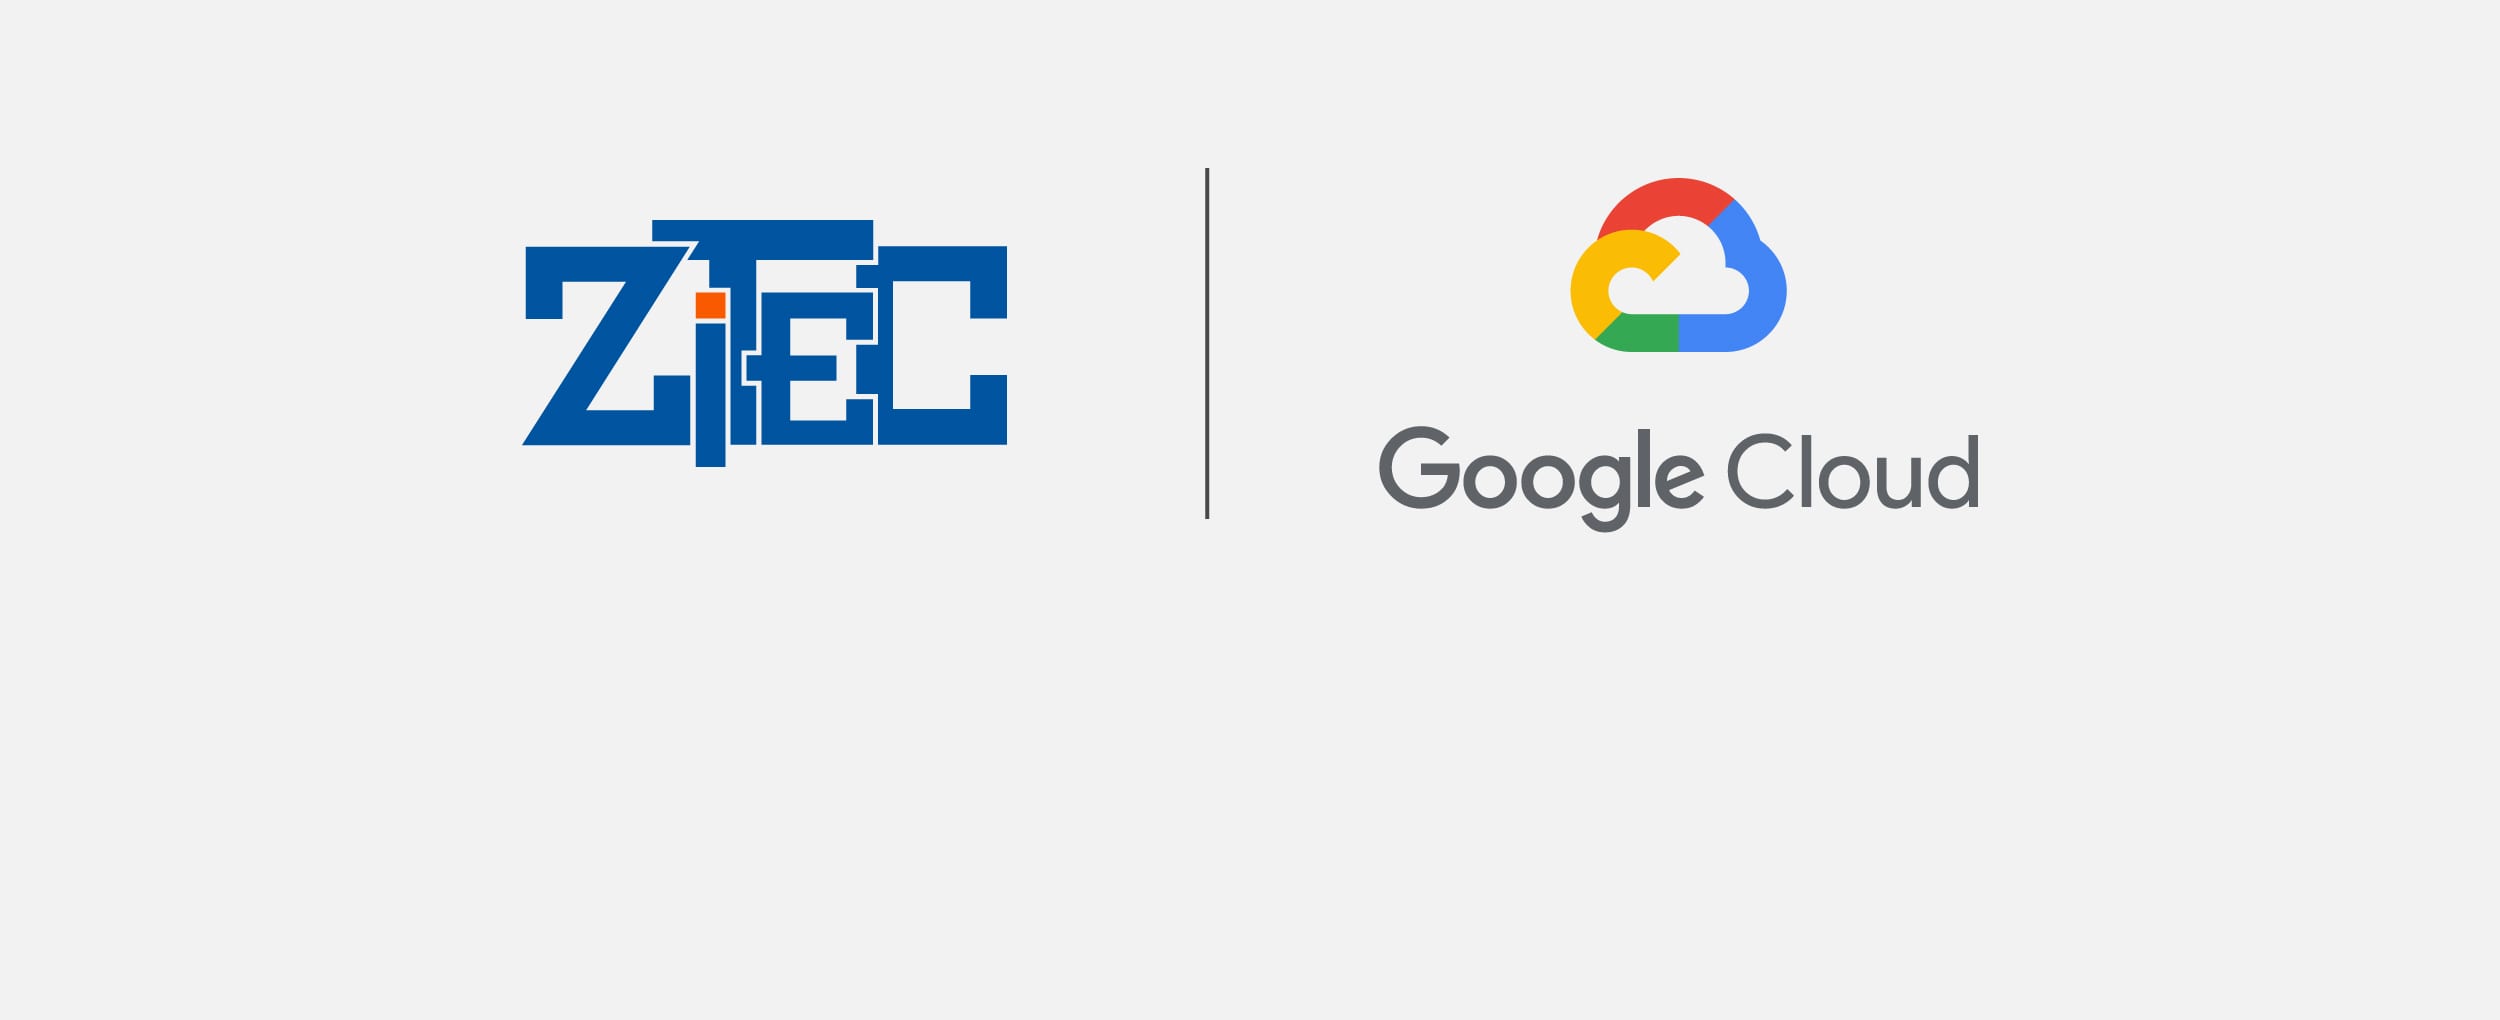 Zitec, desemnat Partenerul Anului de către Google Cloud pentru Impactul Social în EMEA